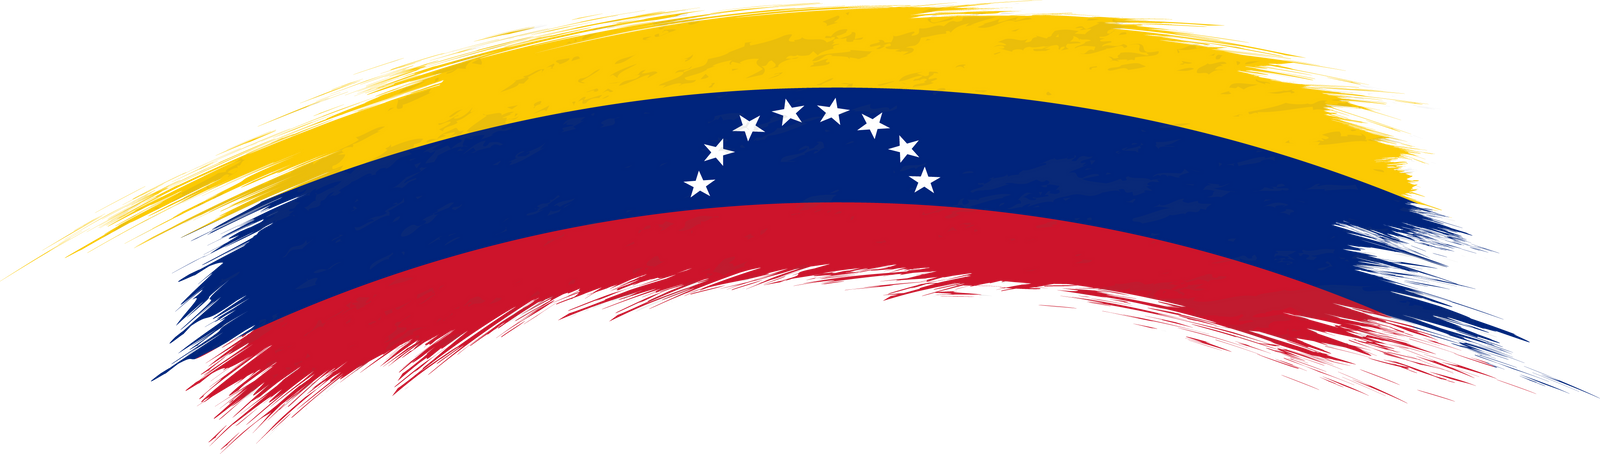 Flag of Venezuela in rounded grunge brush stroke.